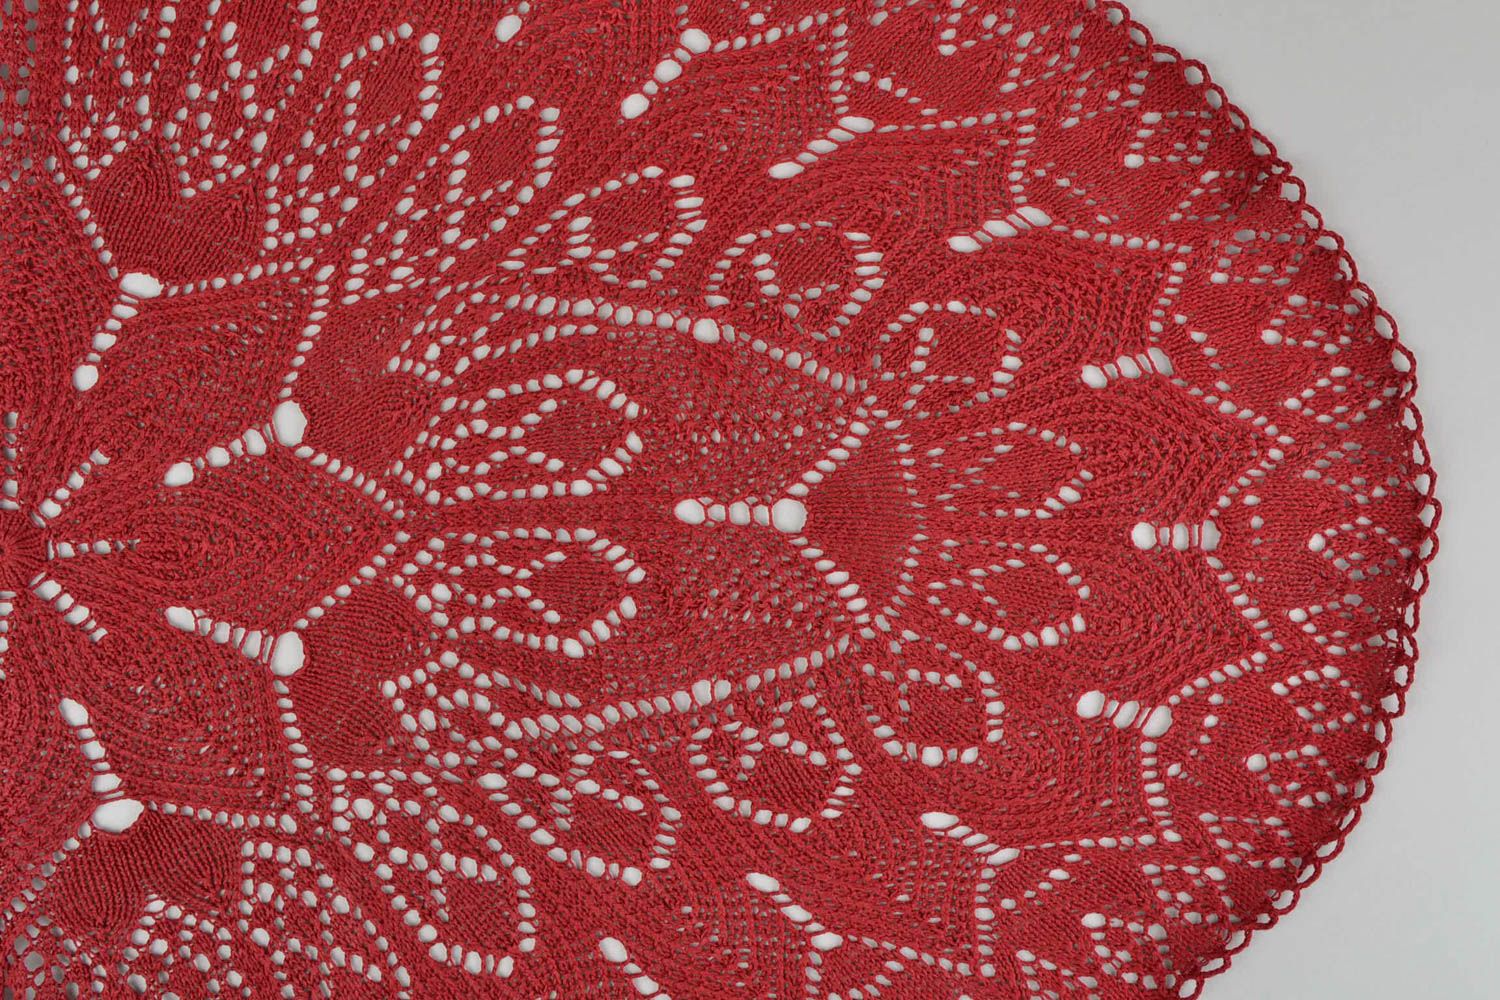 Napperon fait main Napperon de table Idee deco maison Deco design coton rouge photo 4